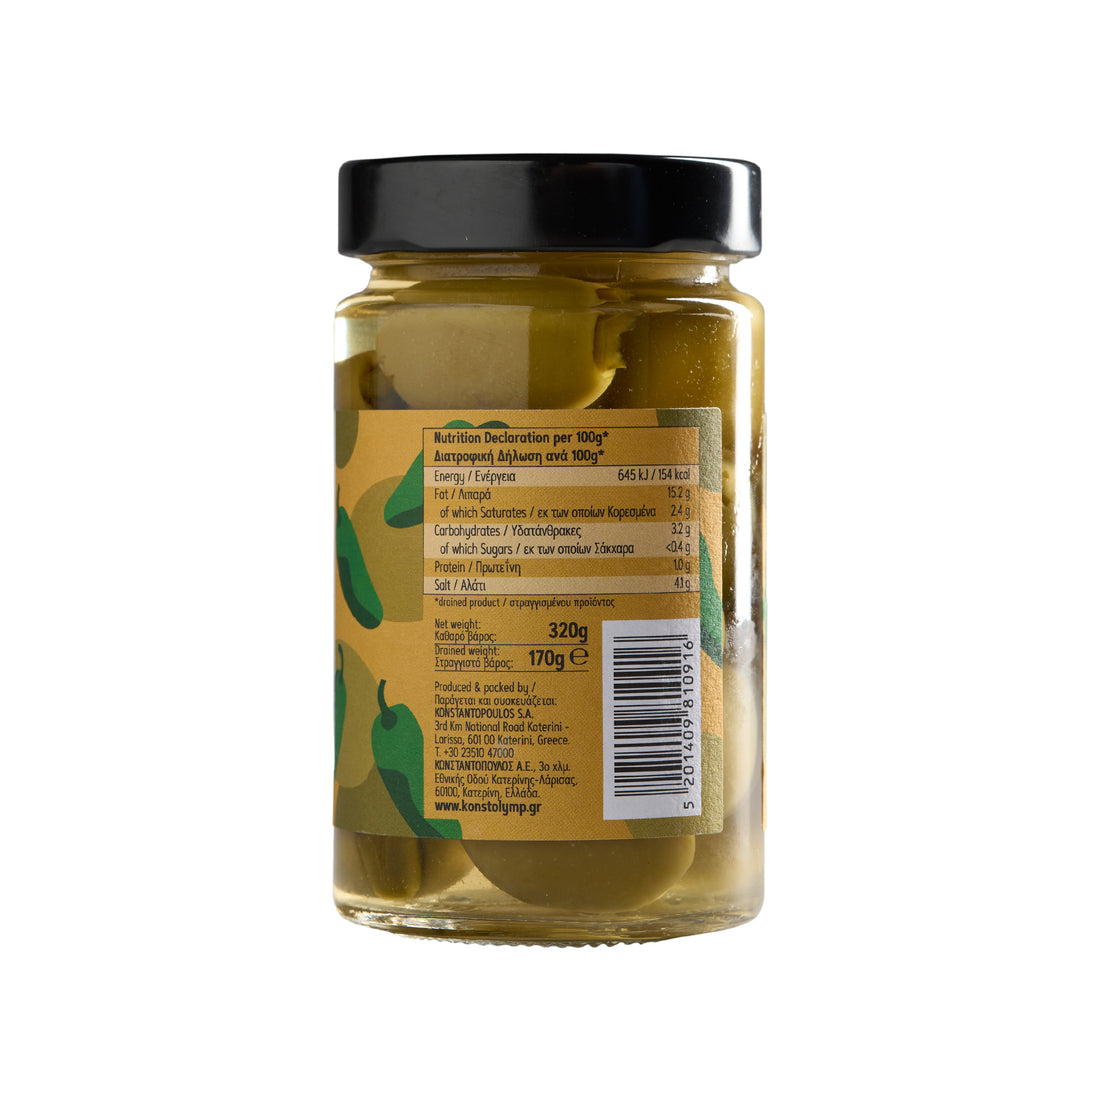 Olymp Konstantopoulos Grüne Oliven gefüllt mit Jalapeno 320 g